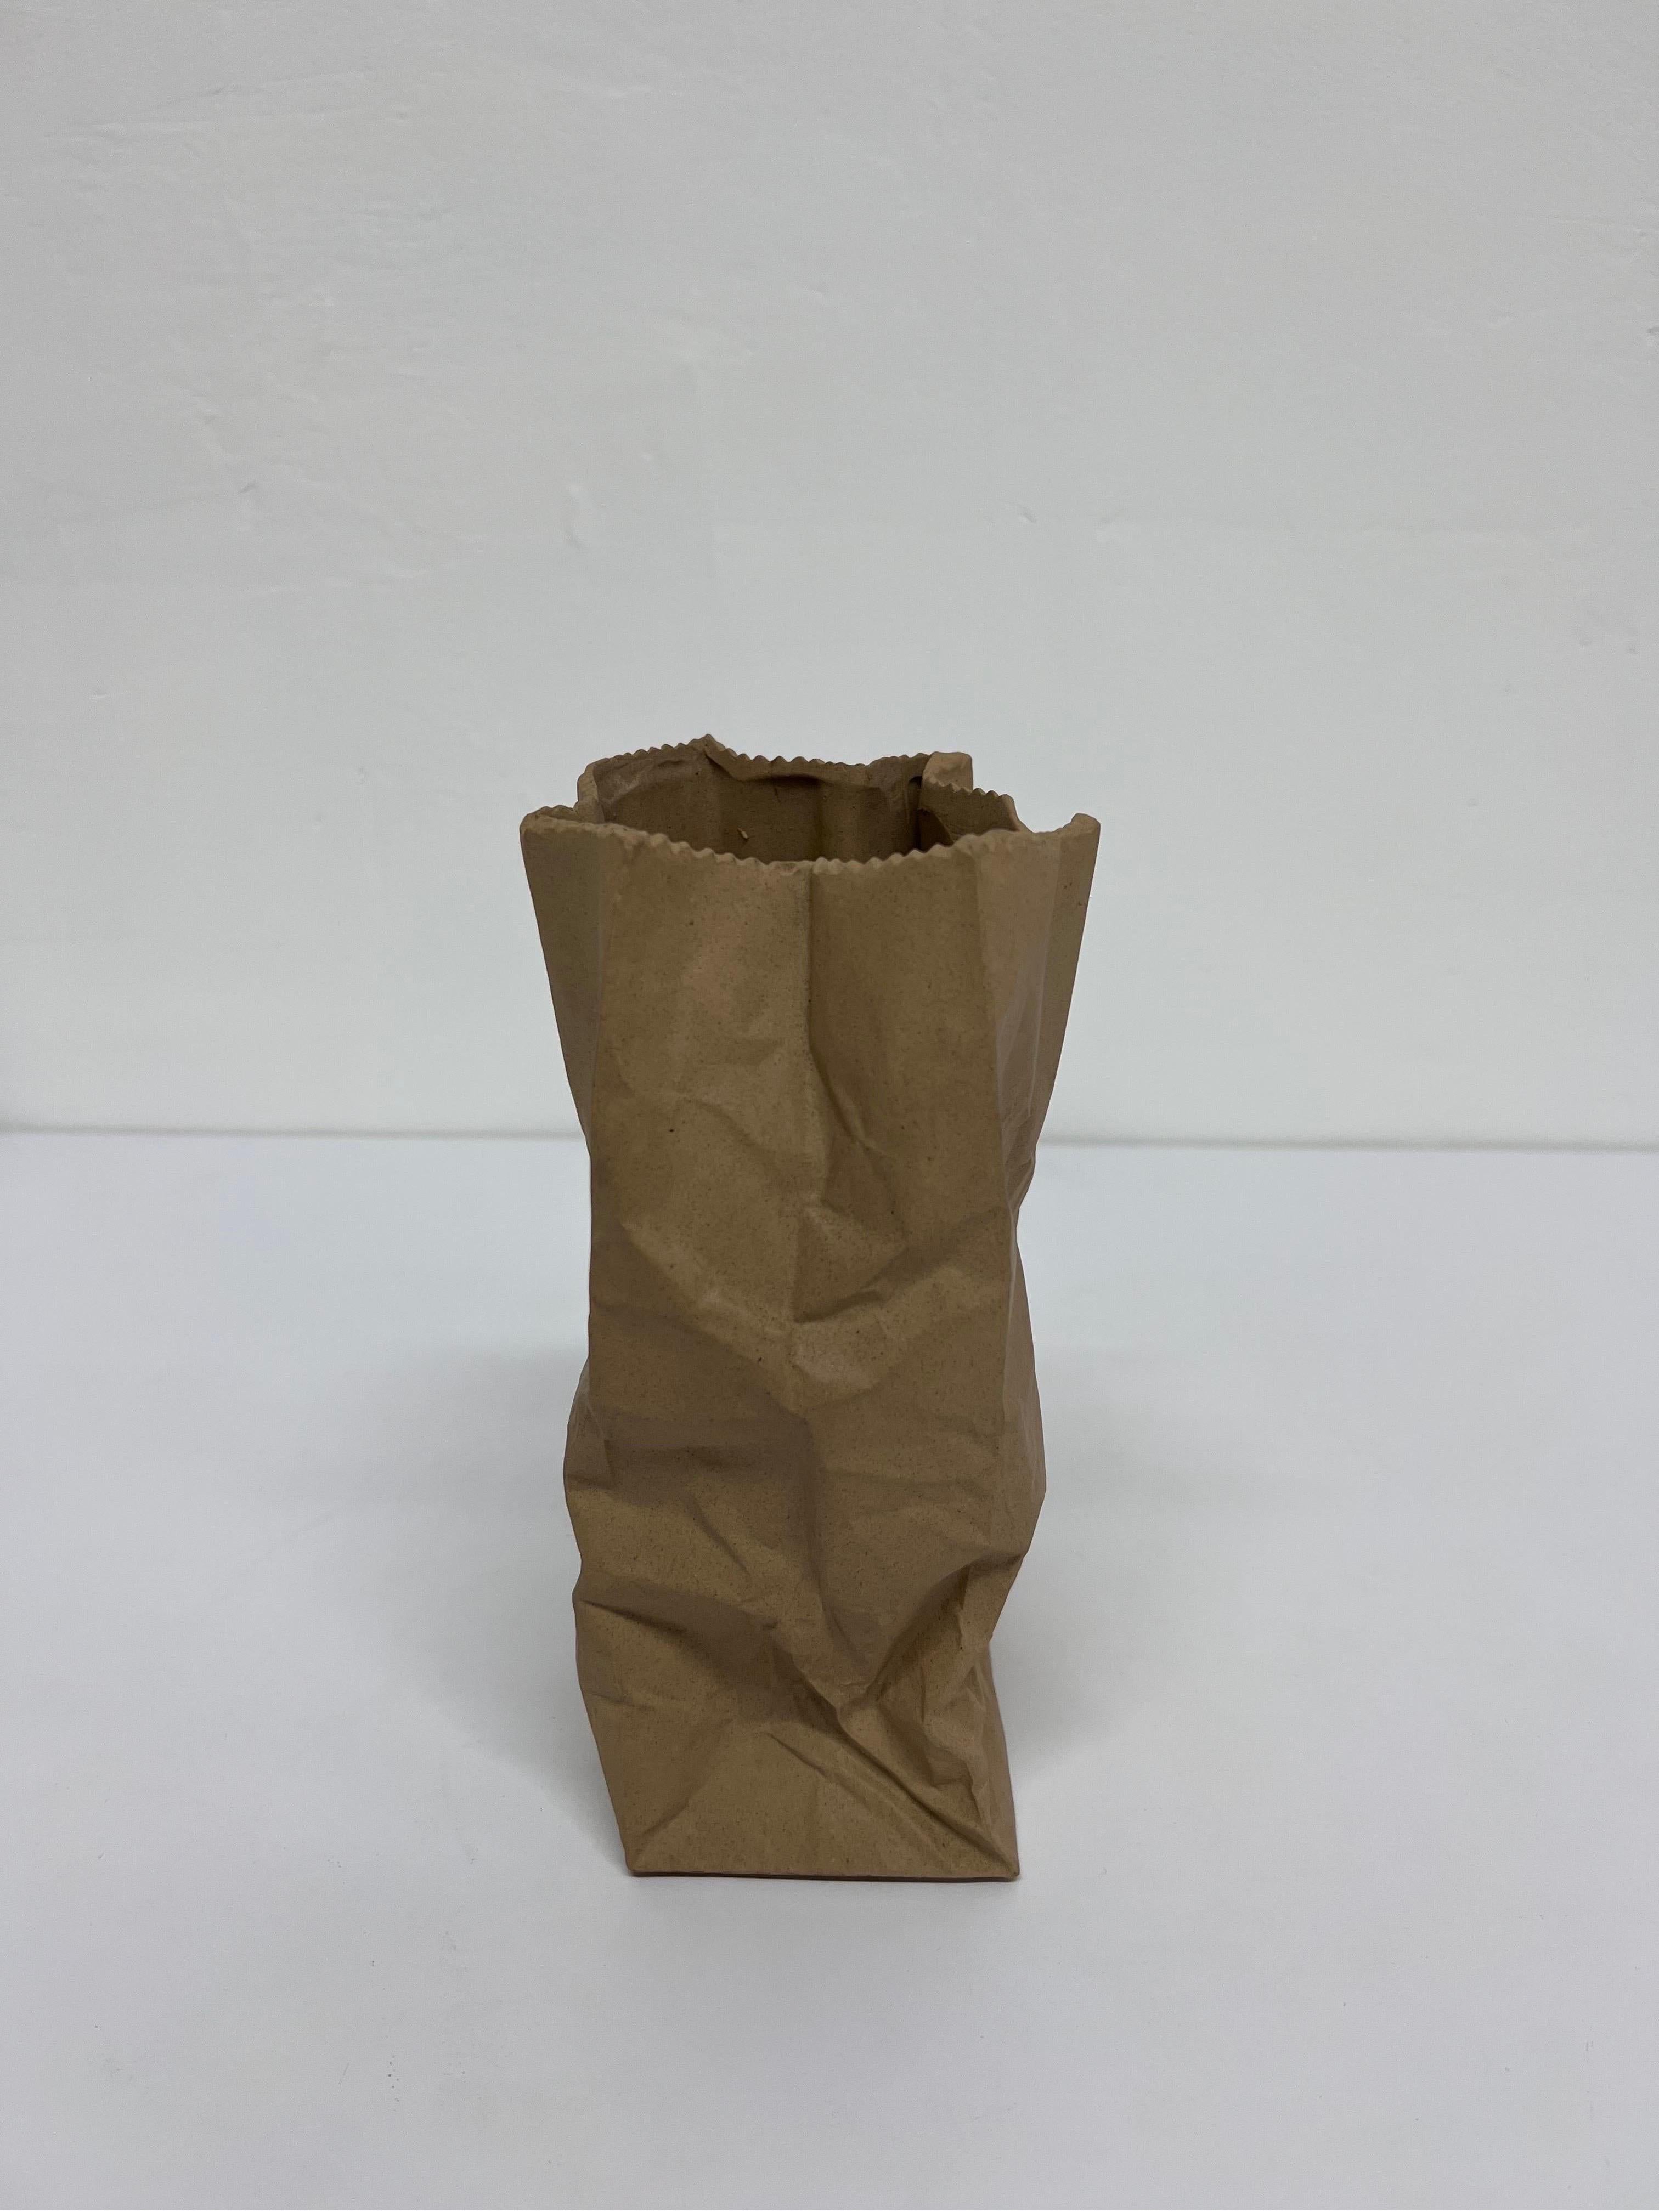 ceramic paper bag vase